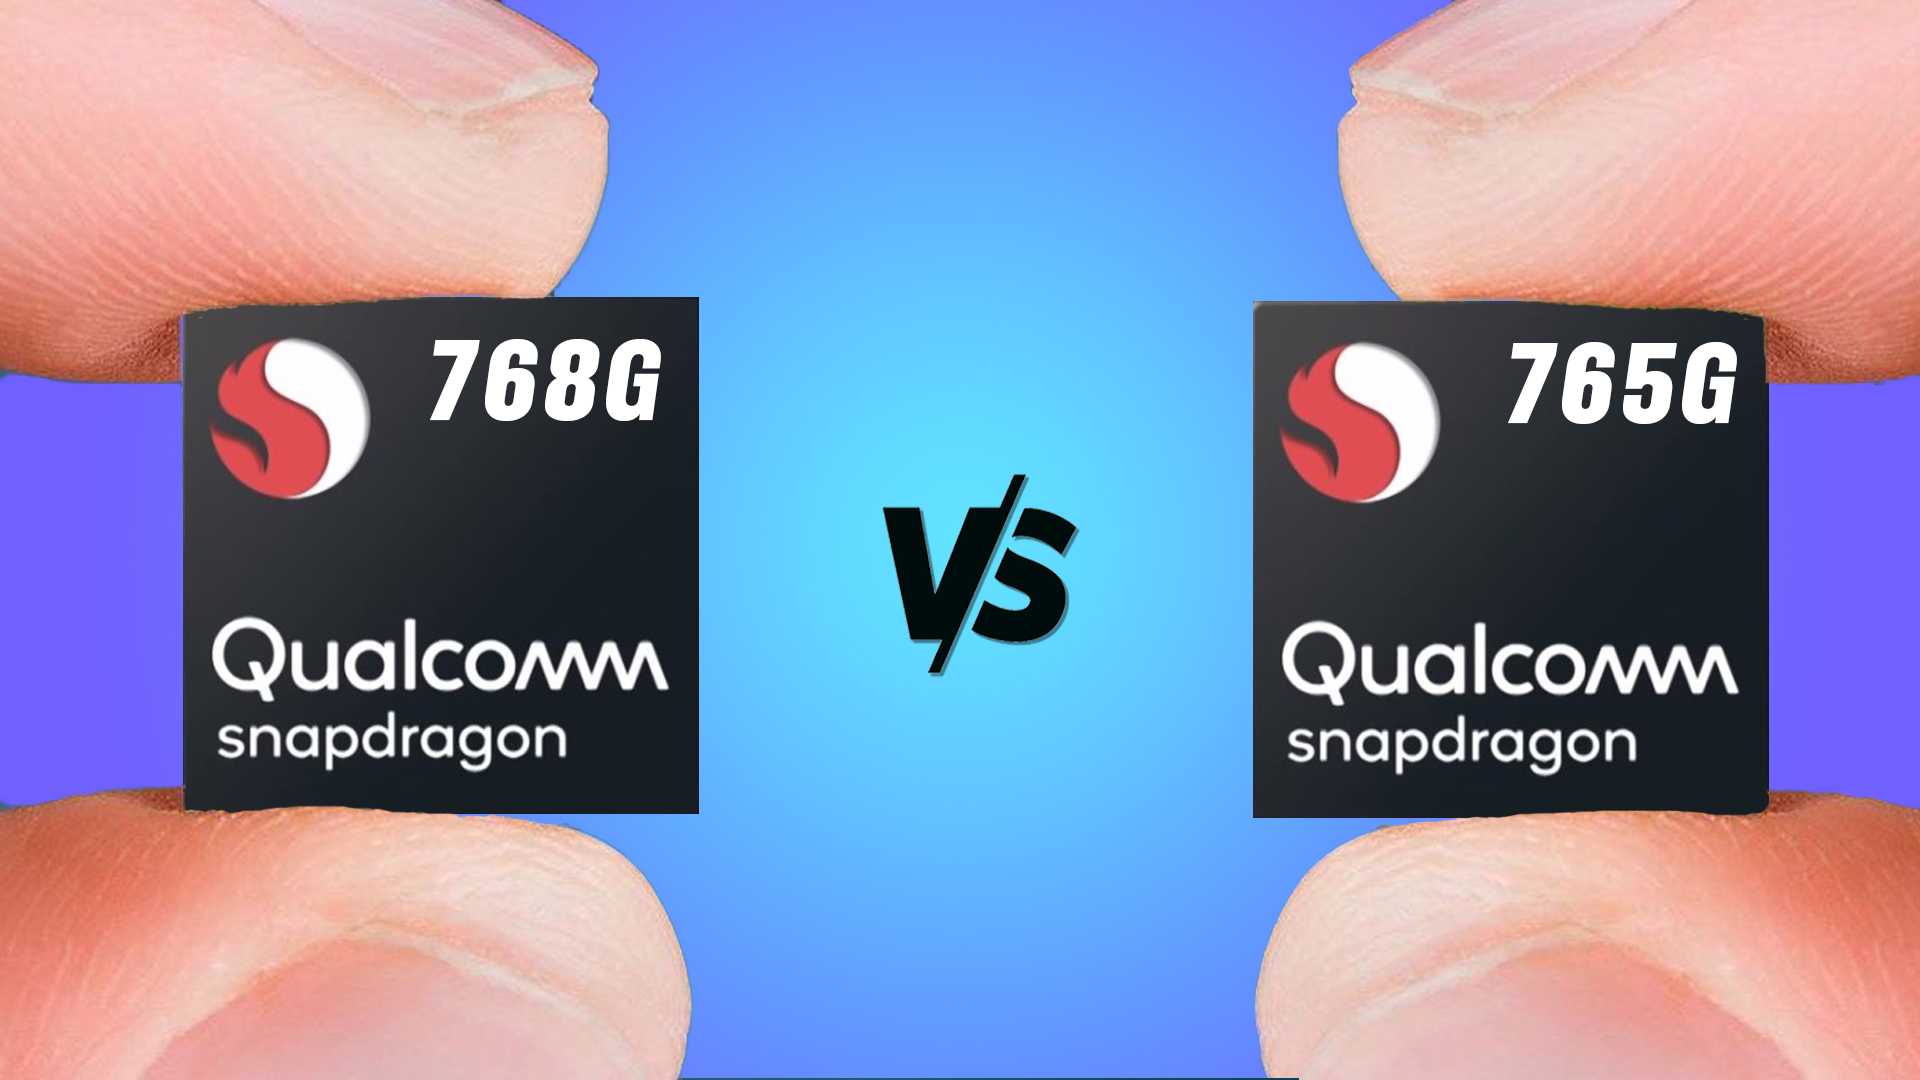 Huawei создала дешевый процессор с встроенным 5g-модемом. qualcomm нечем ответить